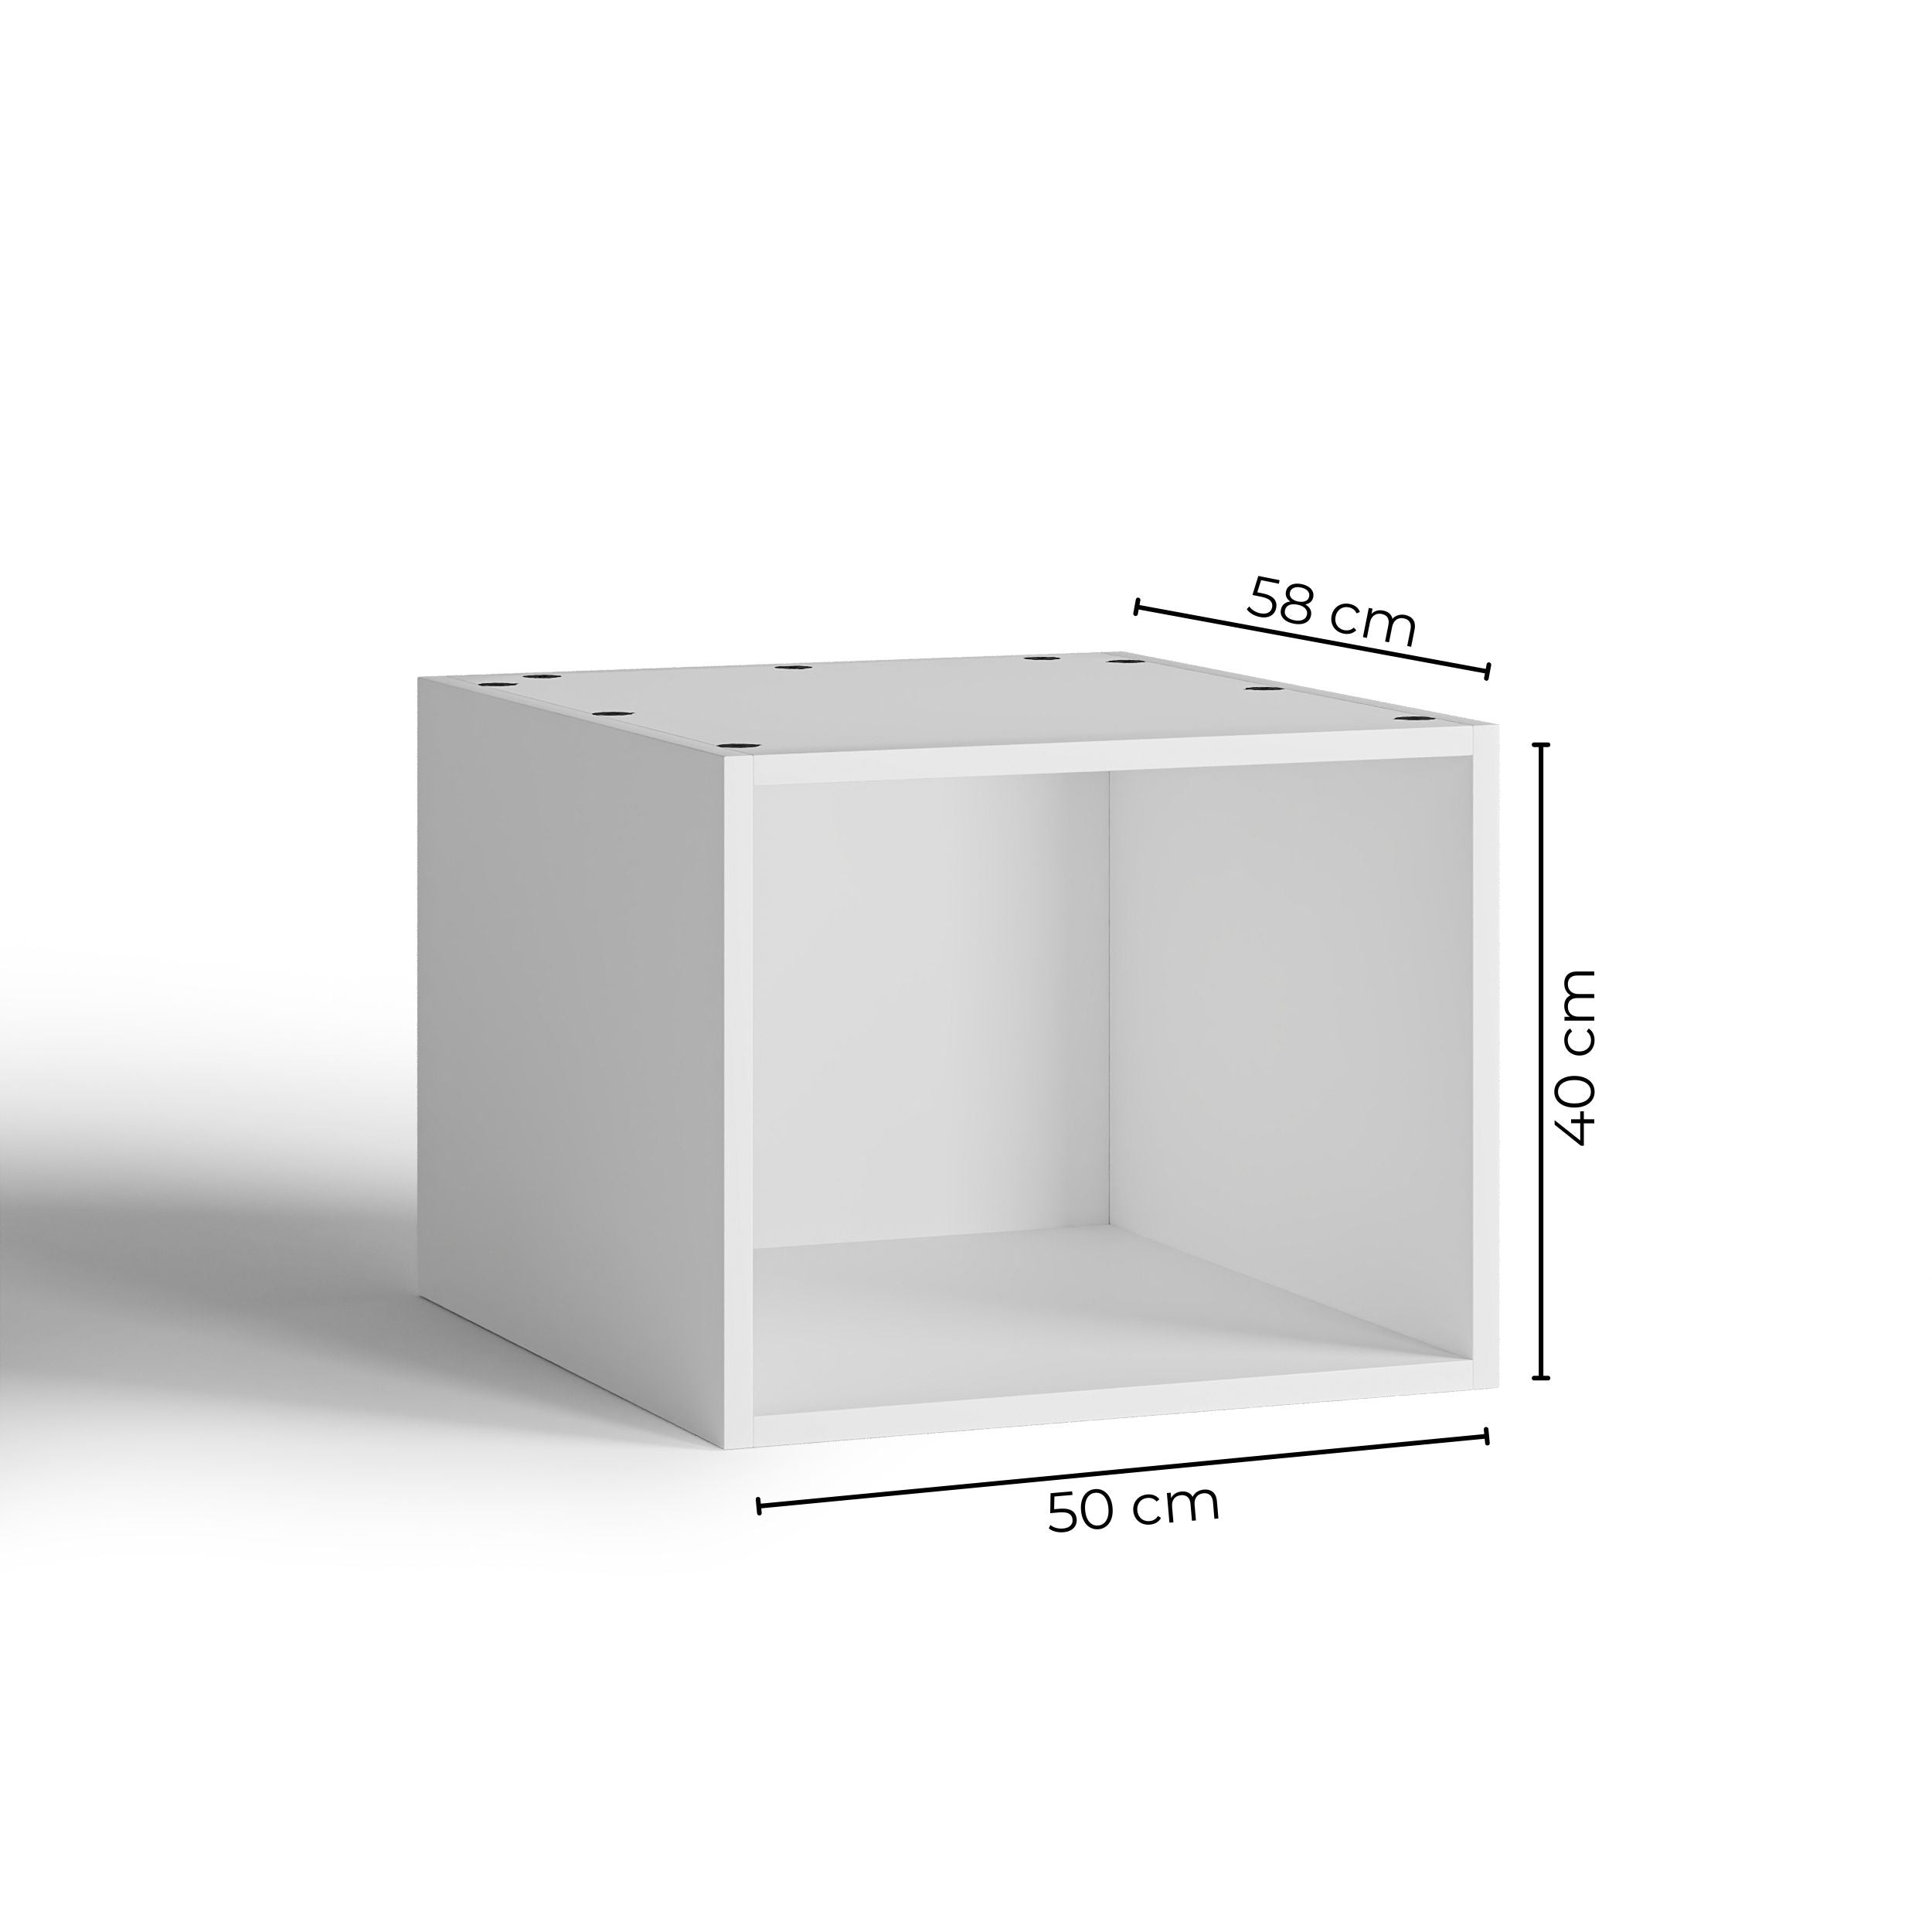 50x40 - Cabinet (58cm D) No Doors - PAX